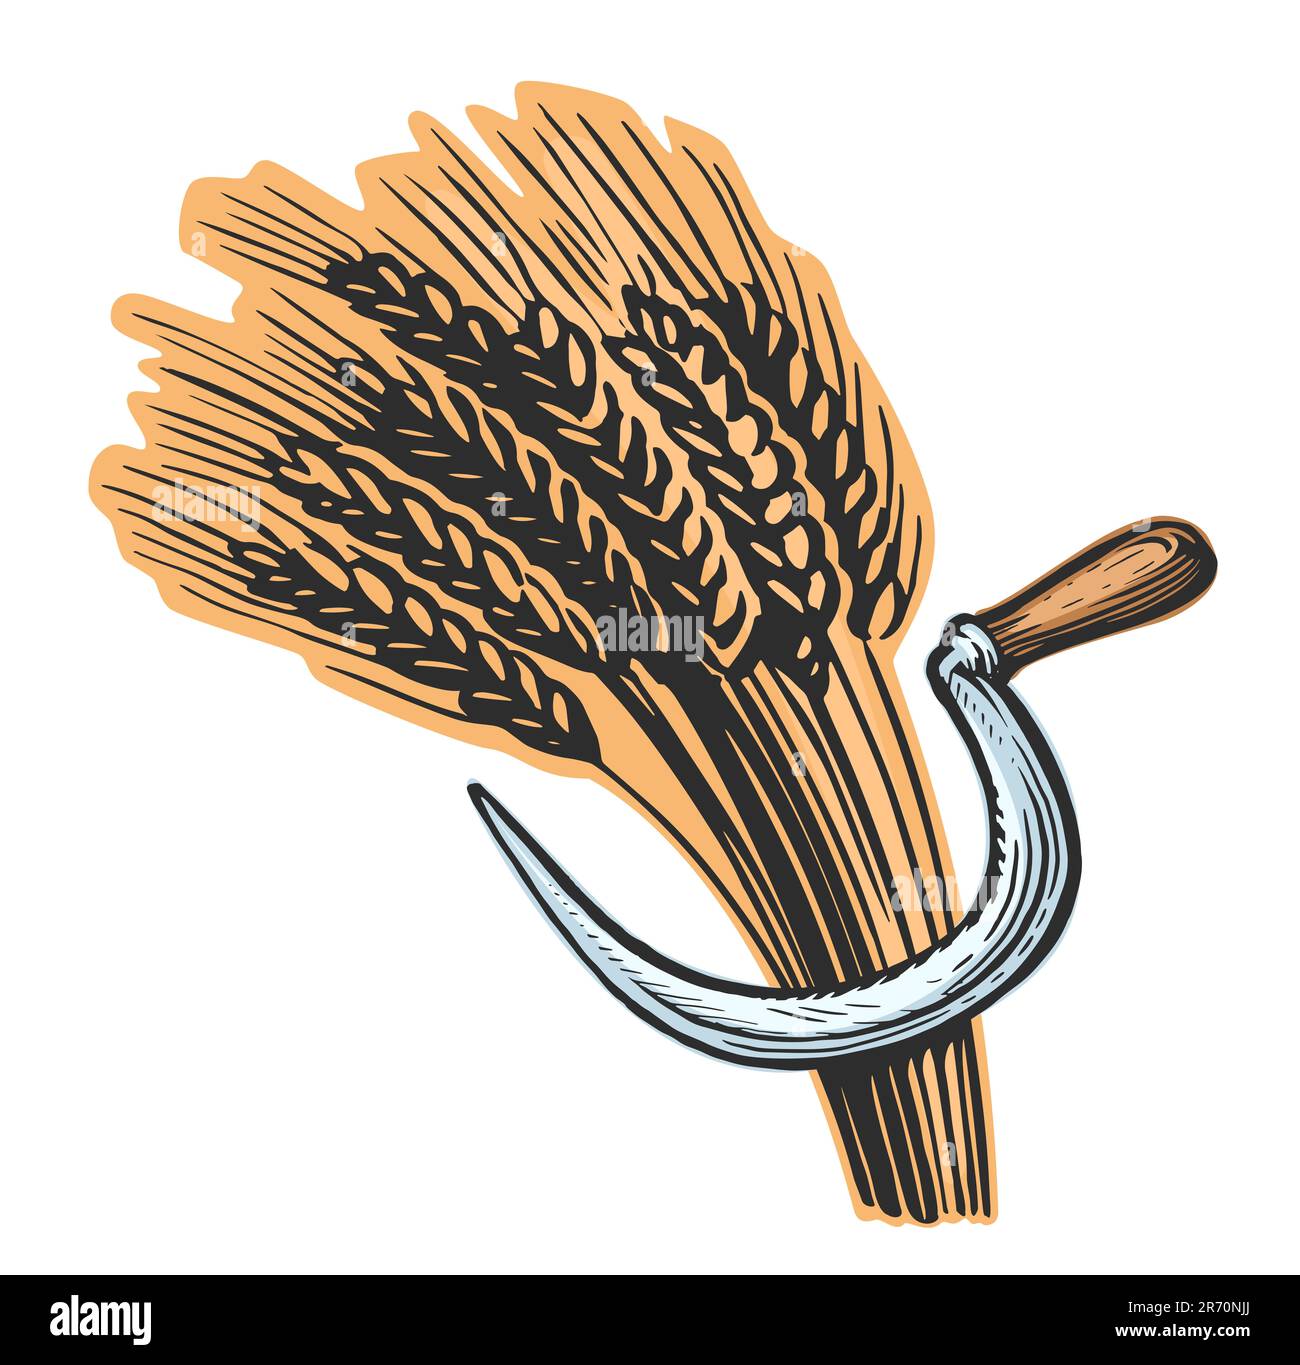 Fodera di grano e falce. Illustrazione del simbolo del pane fresco. Agricoltura, concetto di agricoltura Foto Stock